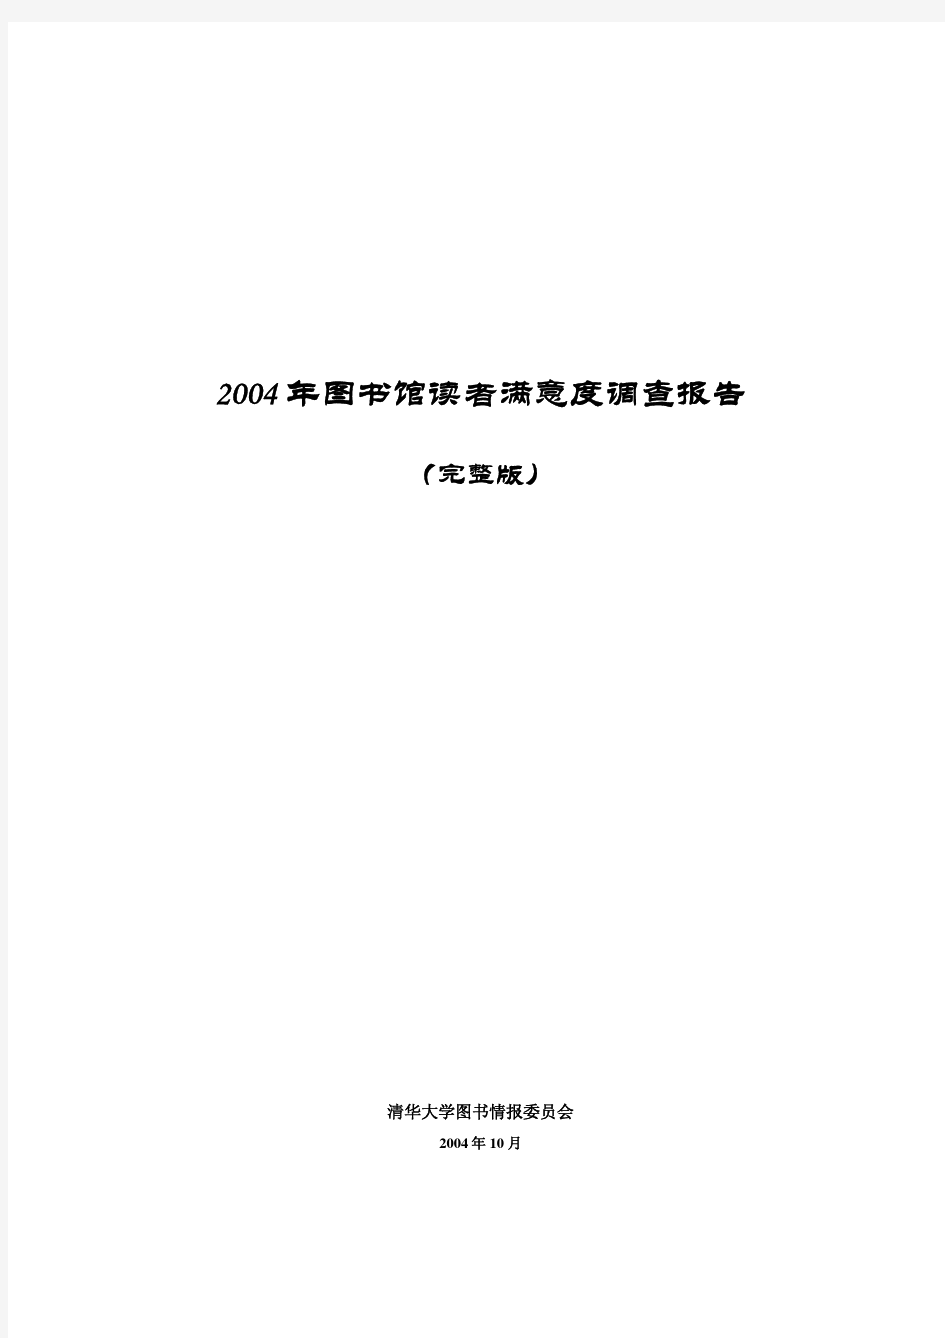 清华大学图书馆读者调查报告(完整版)